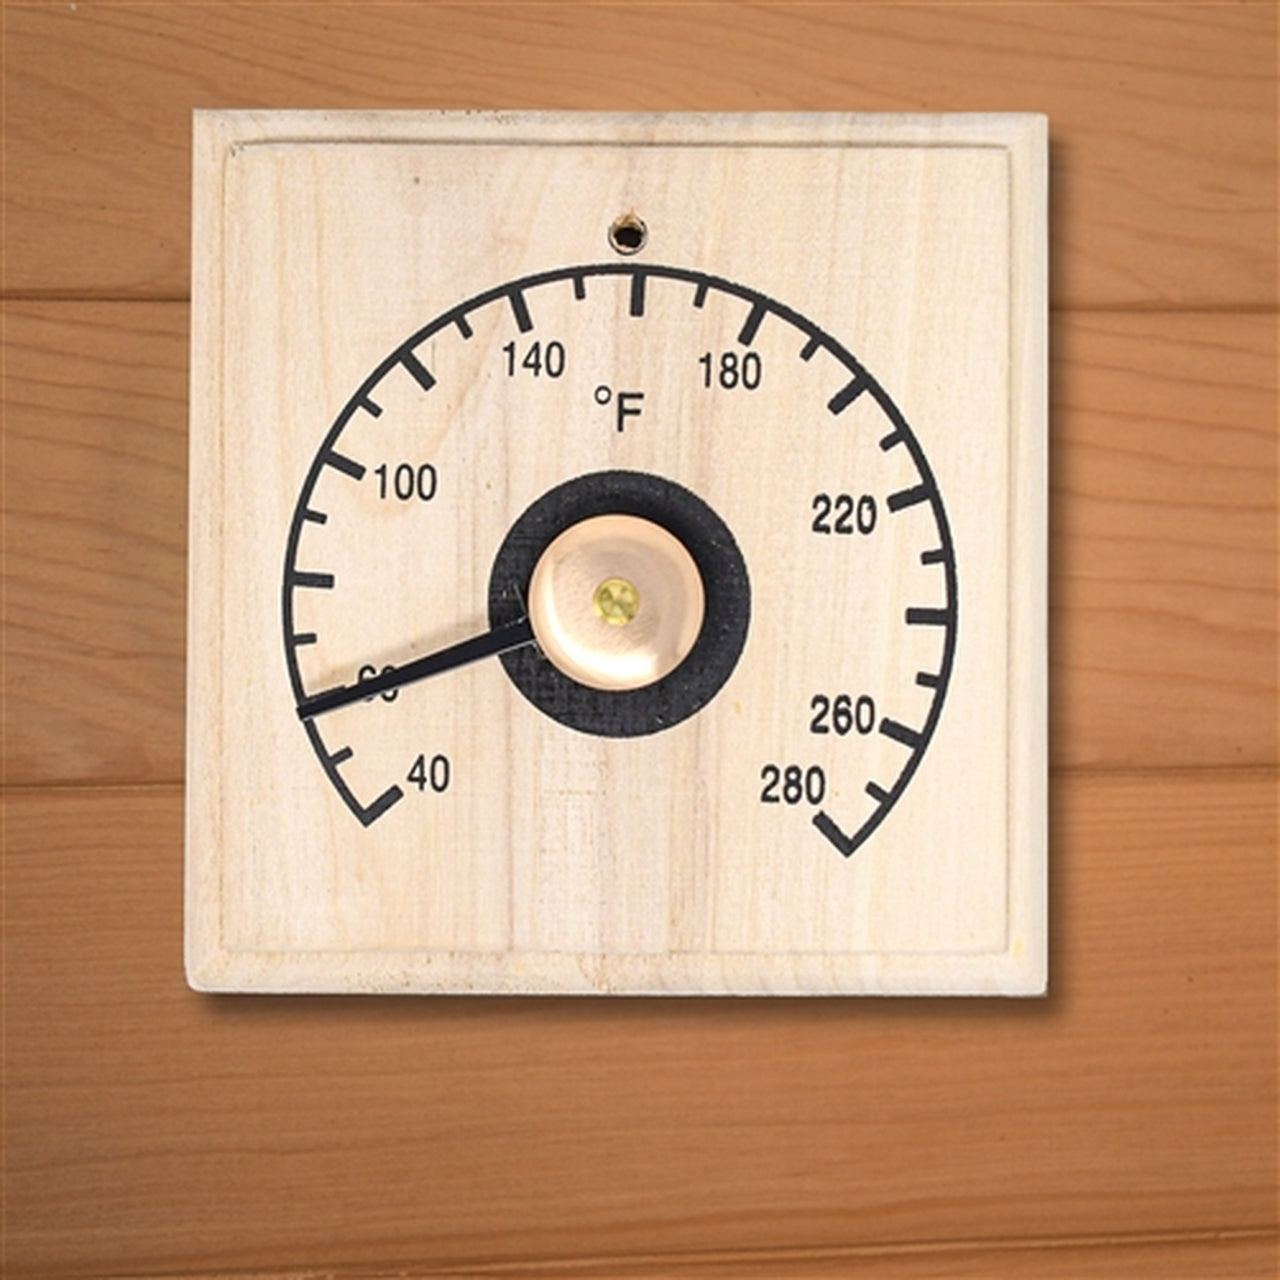 Aleko Finland Pine Square Thermometer in Fahrenheit